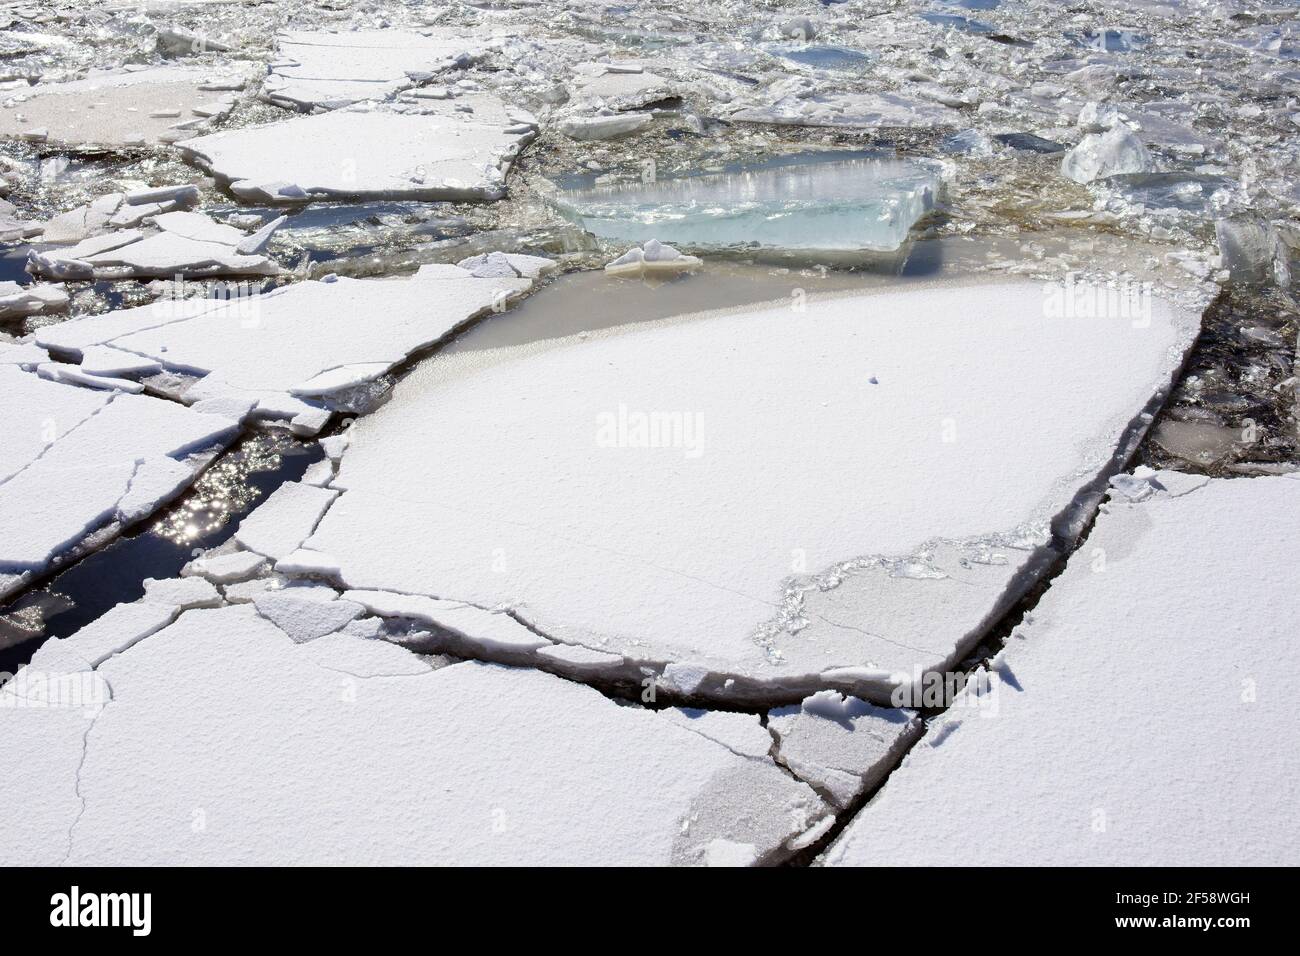 Fiche technique de la glace brisée dans le canal de Saimaa Lappeenranta, Finlande Banque D'Images